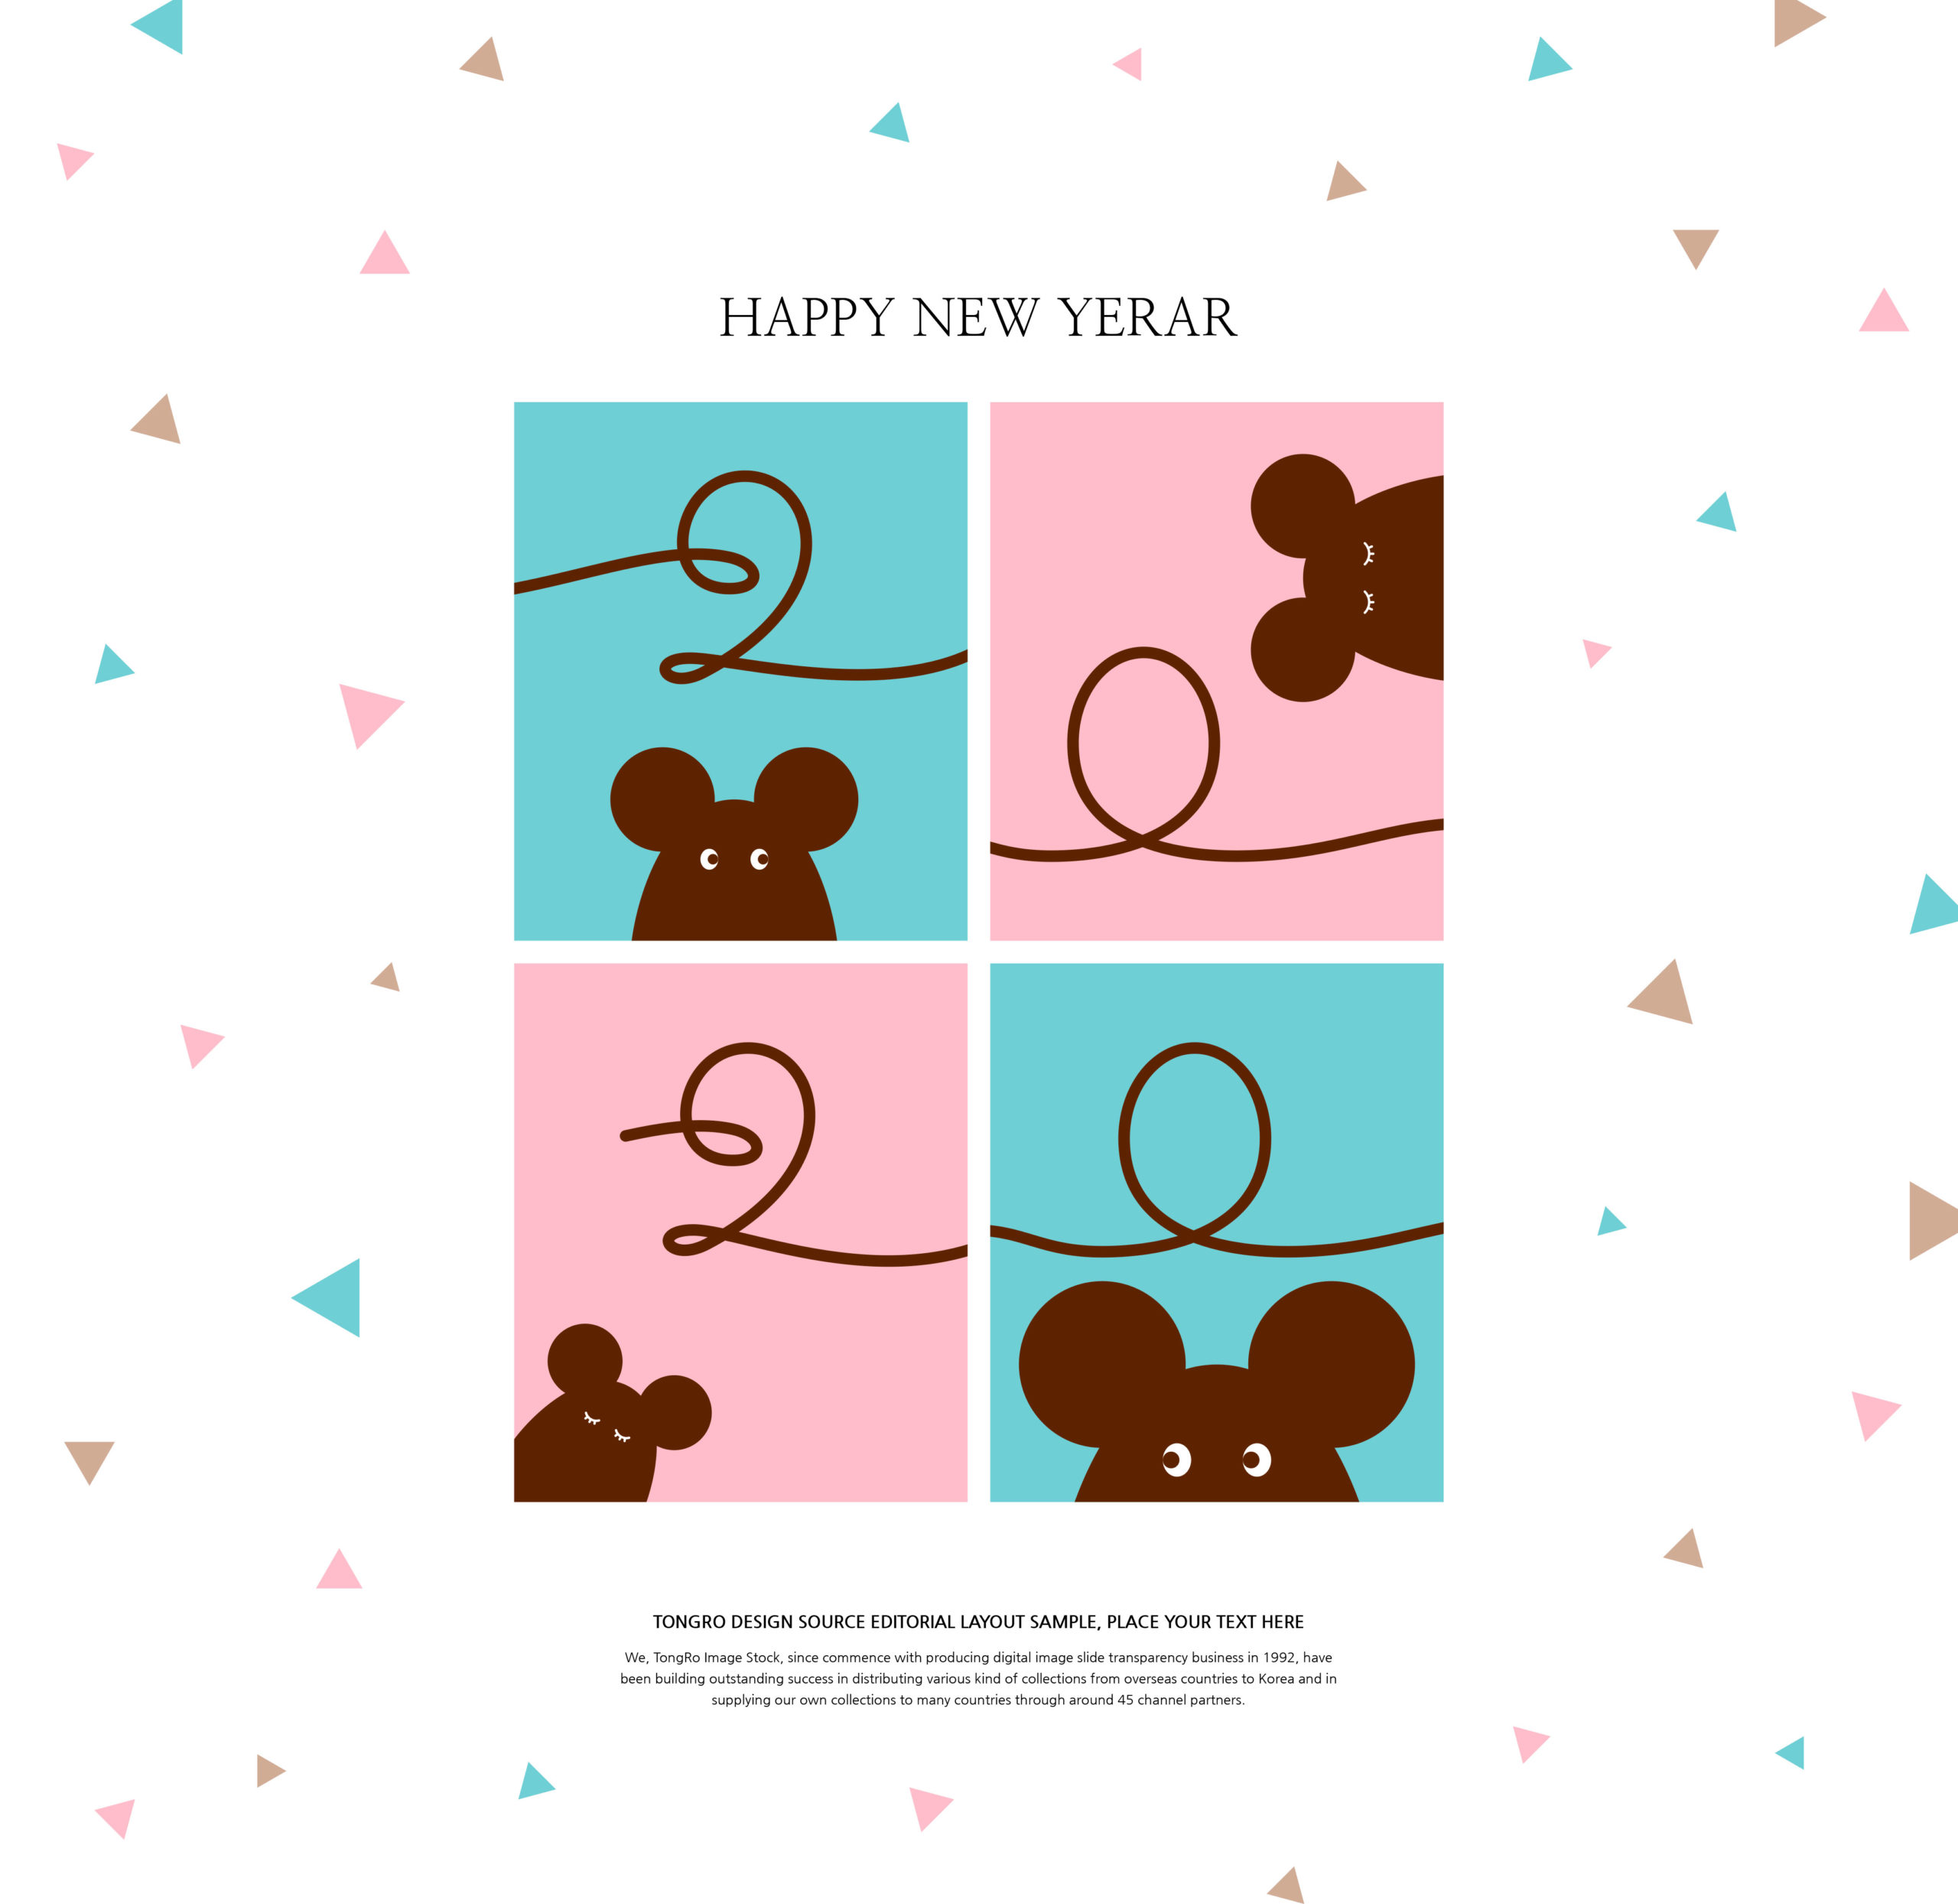 创意2020鼠年新年快乐主题海报模板套装[PSD]插图(6)